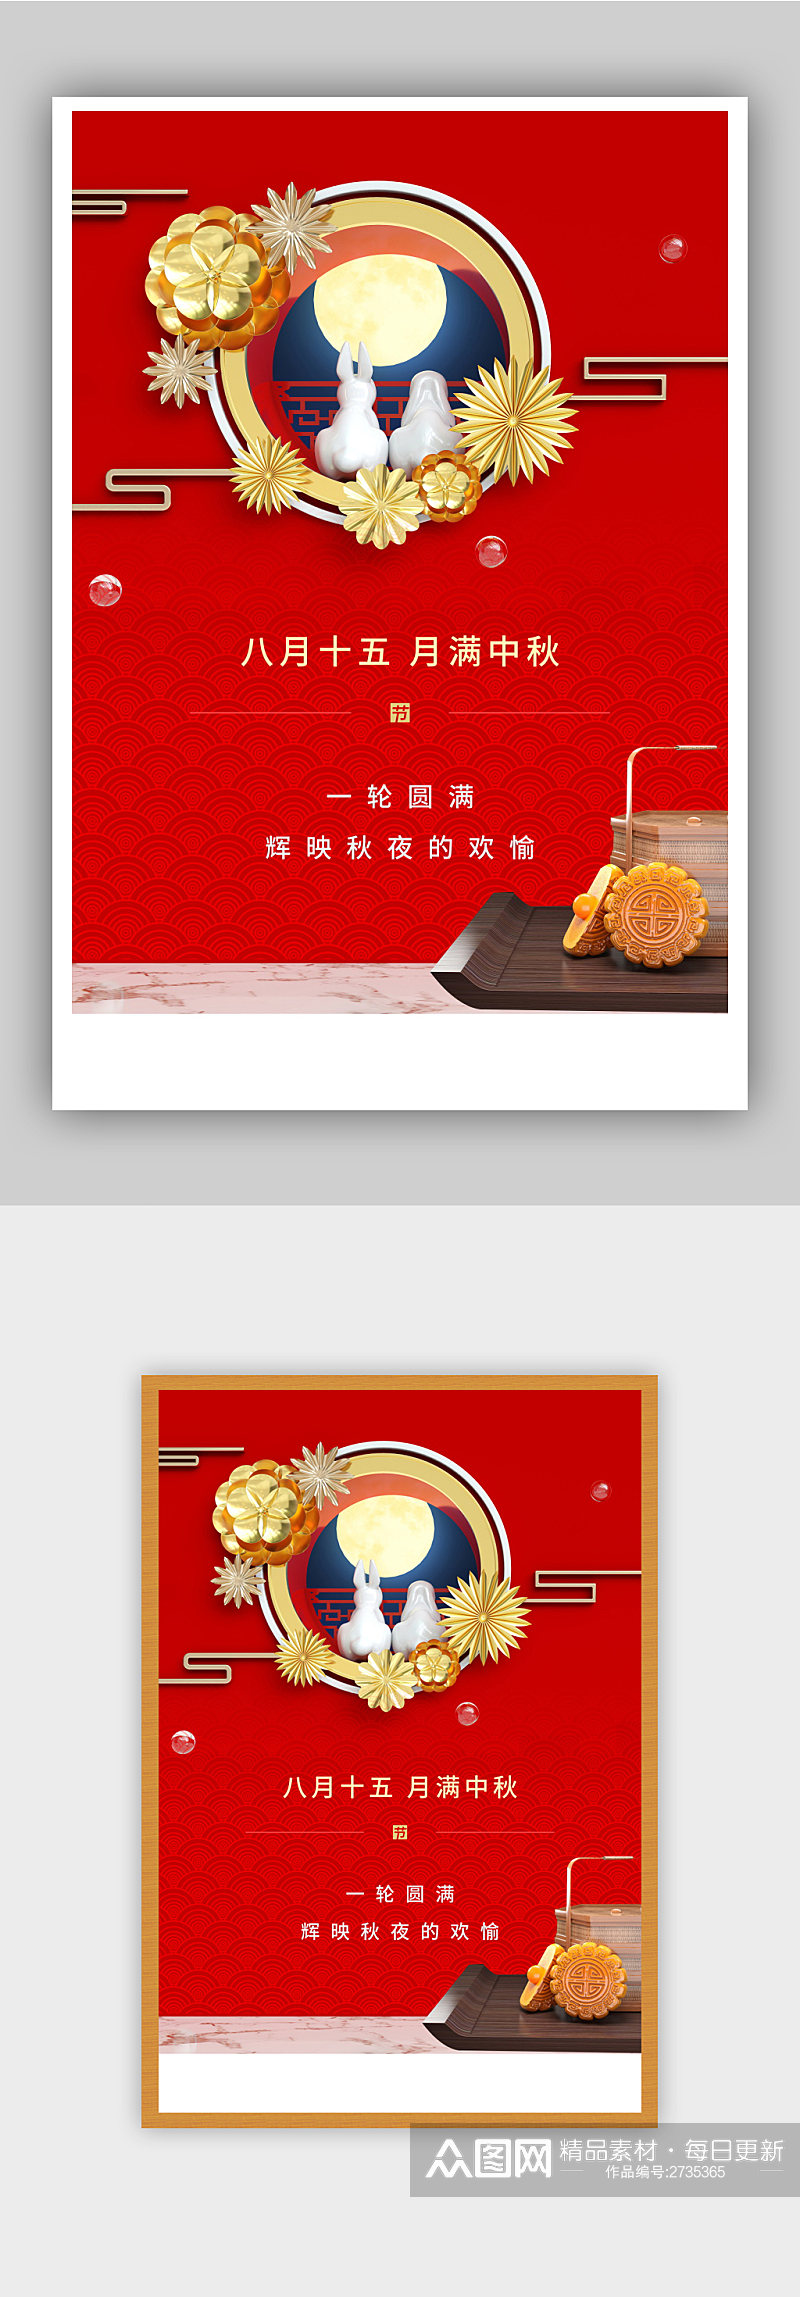 红色中秋节节日海报素材